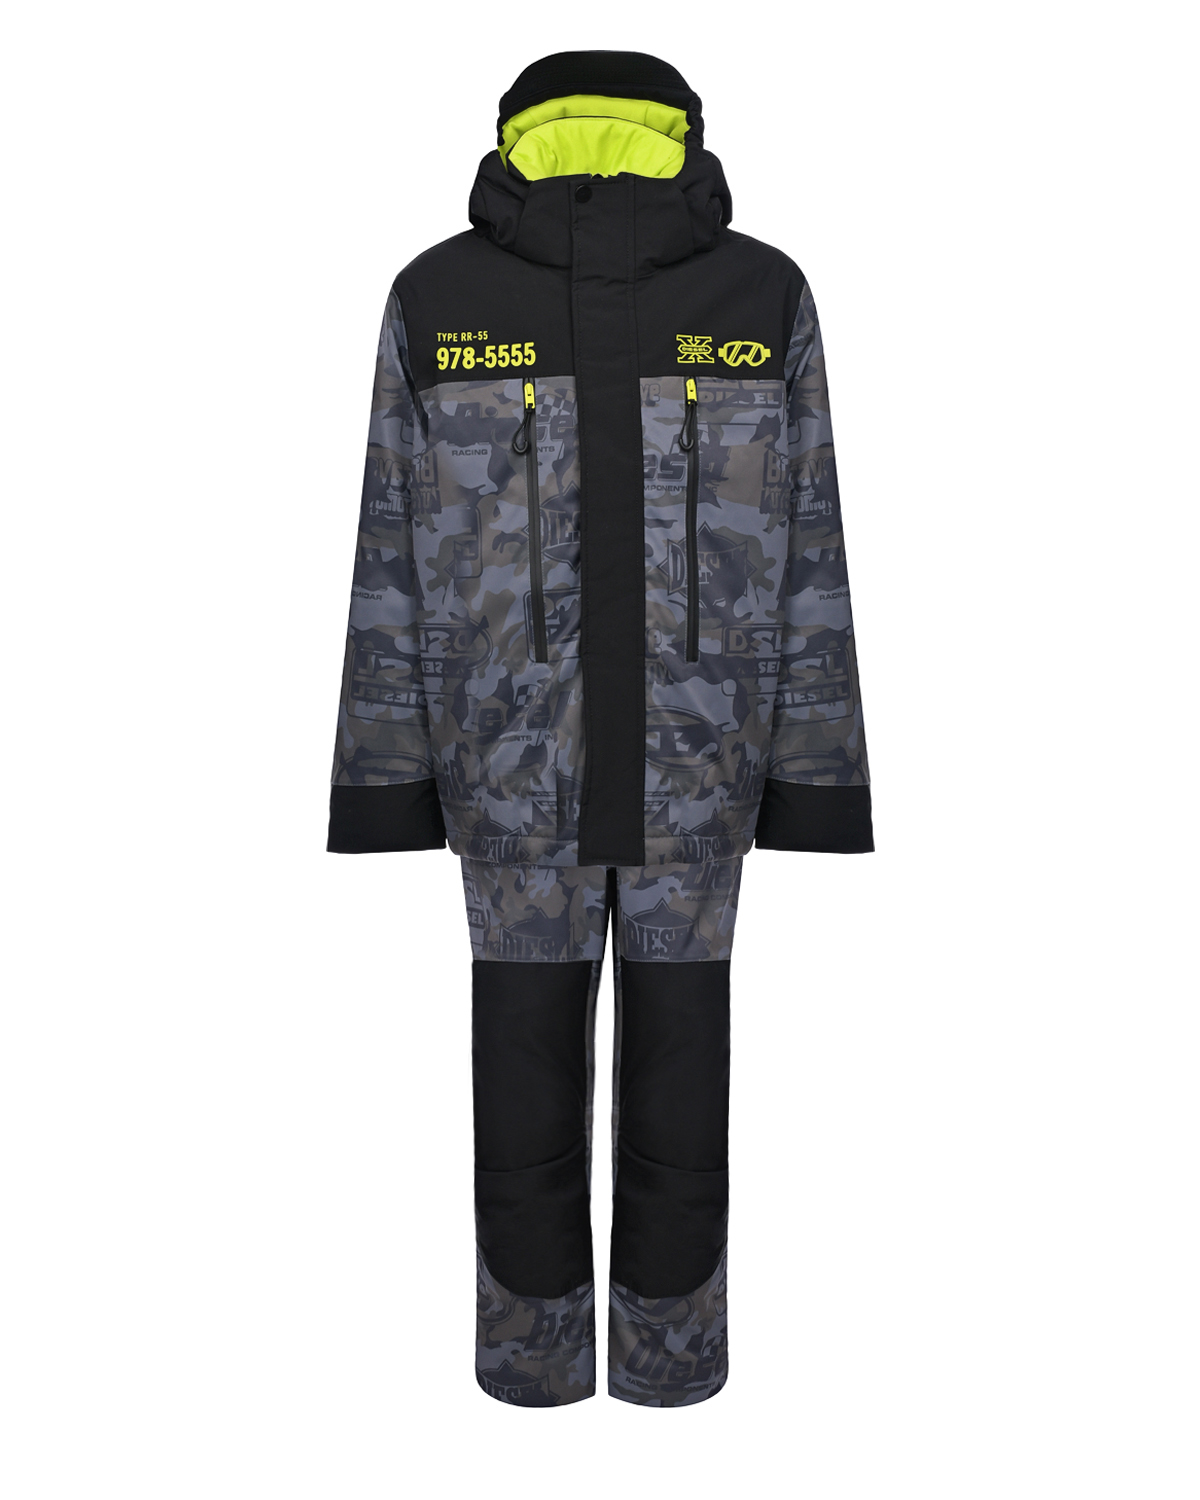 Комплект с курткой и комбинезоном, черный/желтый Diesel детский, размер 140, цвет нет цвета Комплект с курткой и комбинезоном, черный/желтый Diesel детский - фото 1